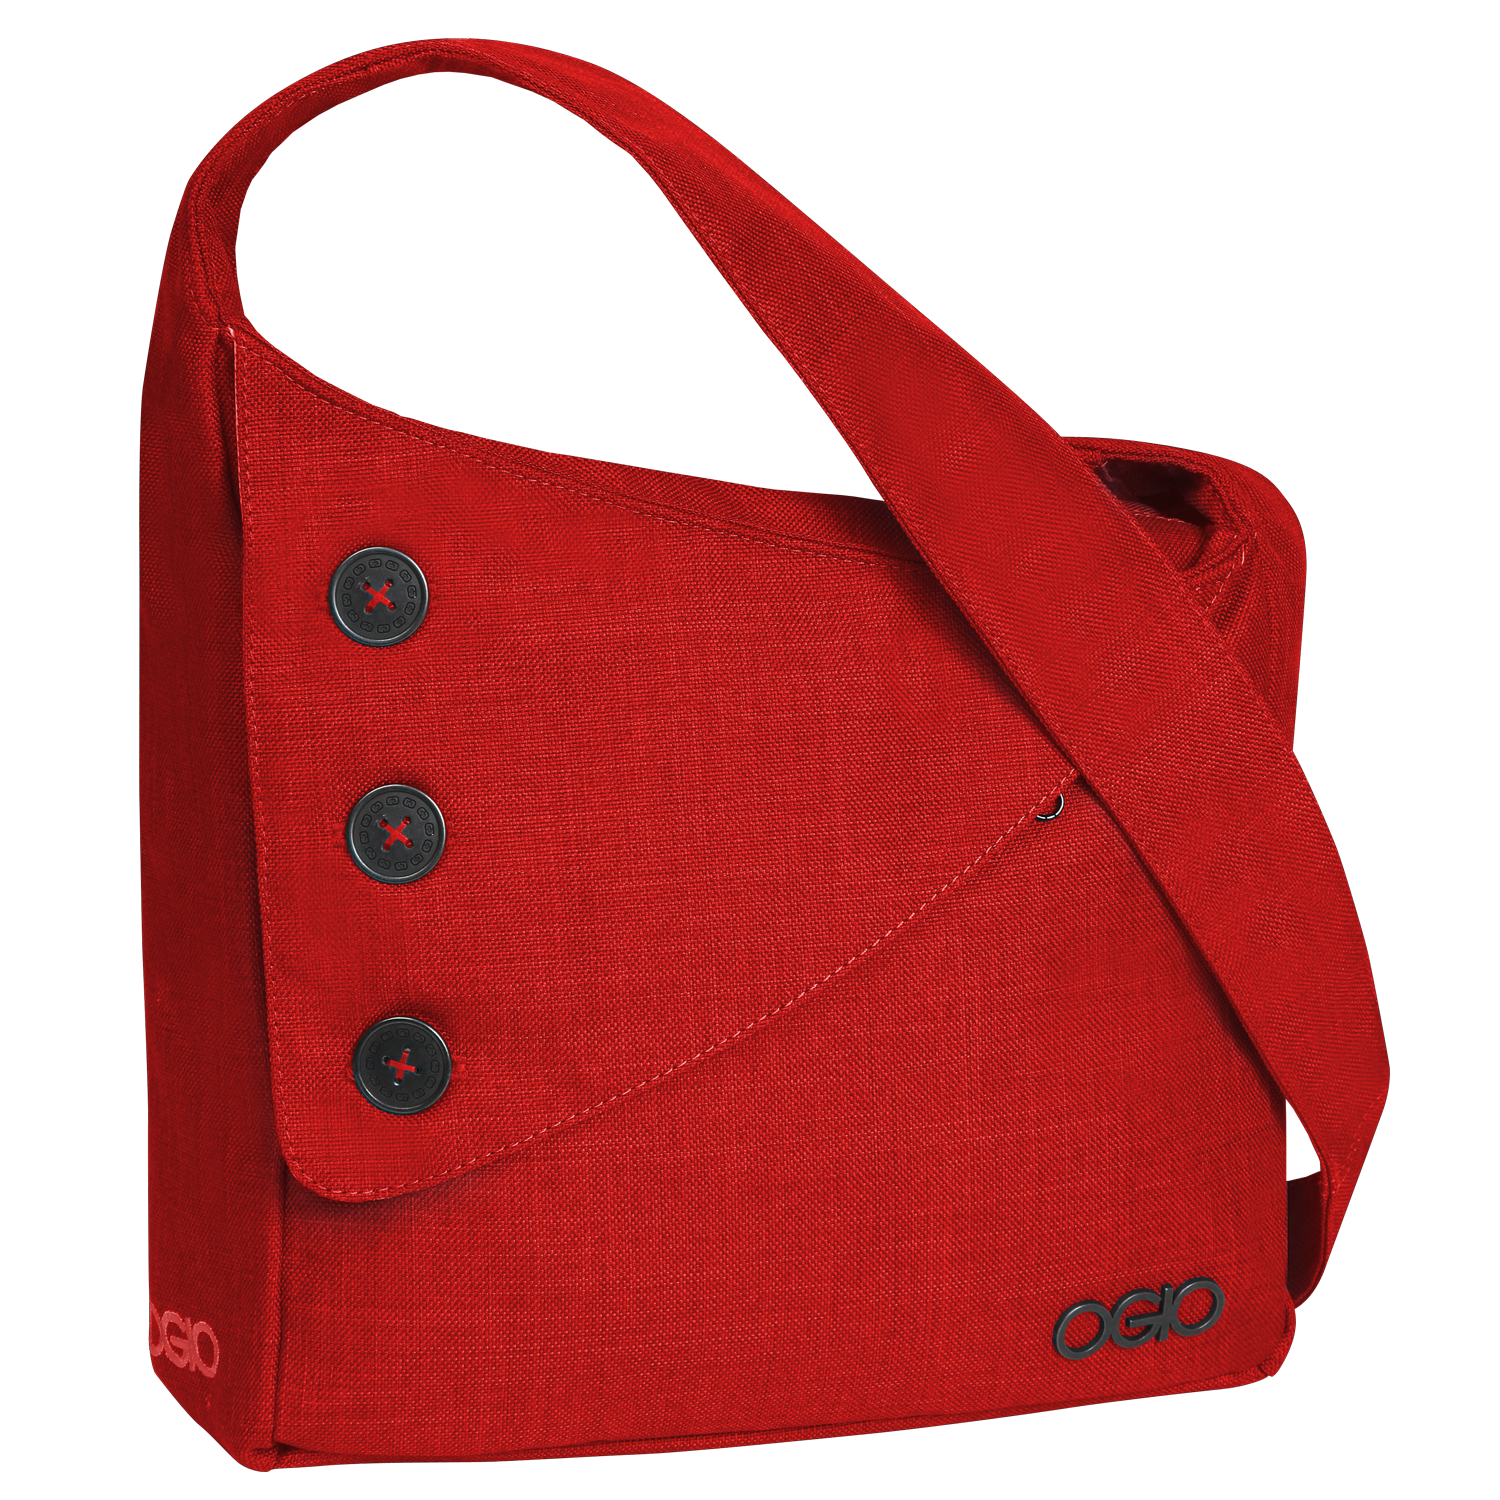 กระเป๋าผู้หญิงสีแดง